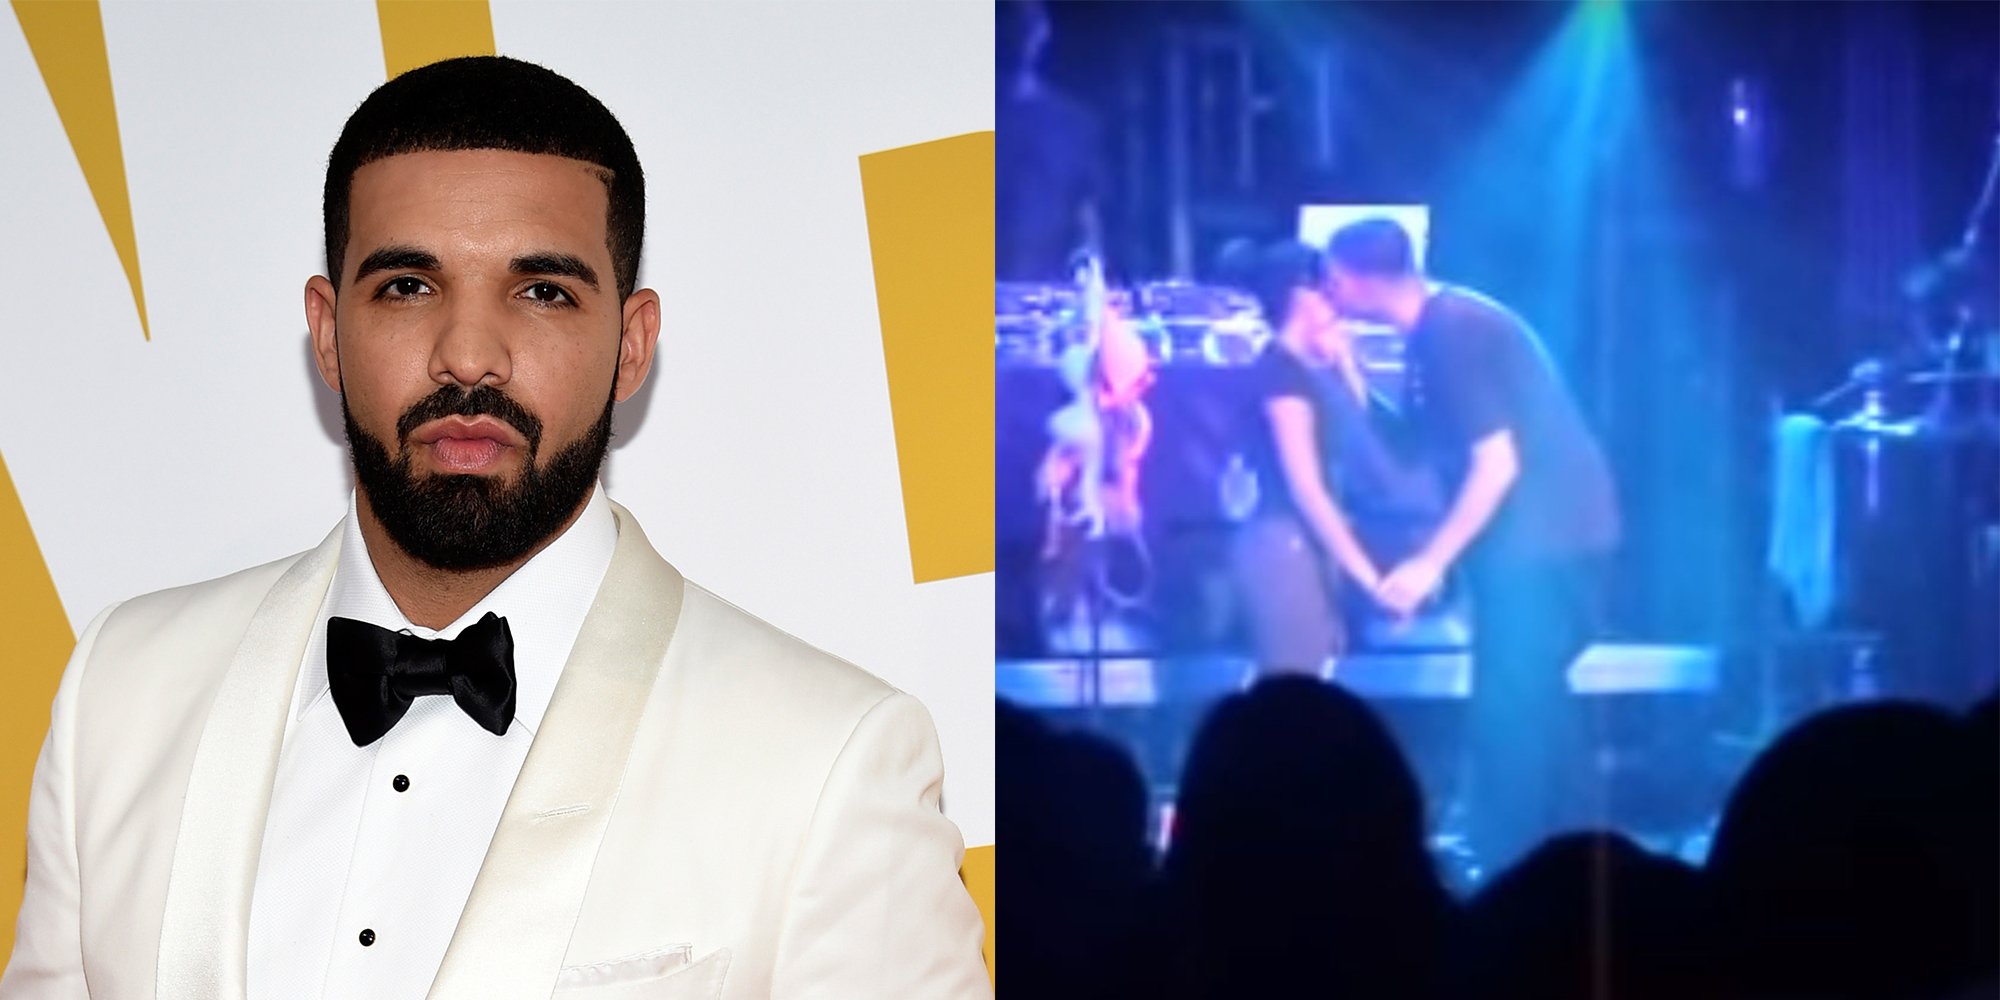 VIDEO: Drake a sărutat o minoră în timpul unui concert: ”Nu vreau să merg la închisoare”